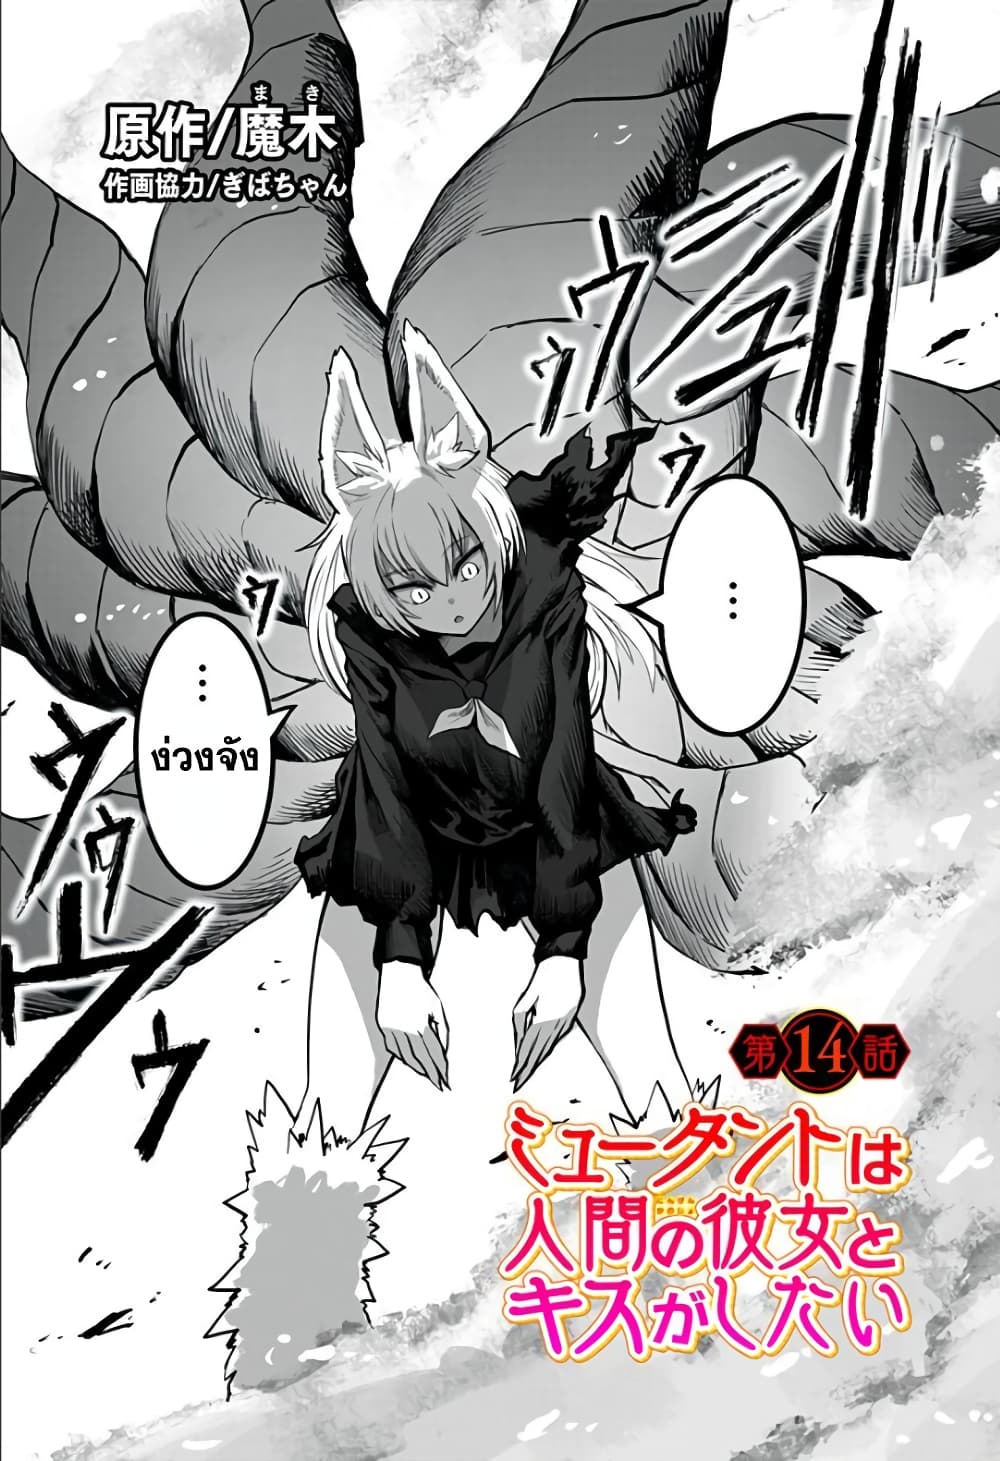 อ่านการ์ตูน Mutant wa ningen no kanojo to kisu ga shitai 14 ภาพที่ 1